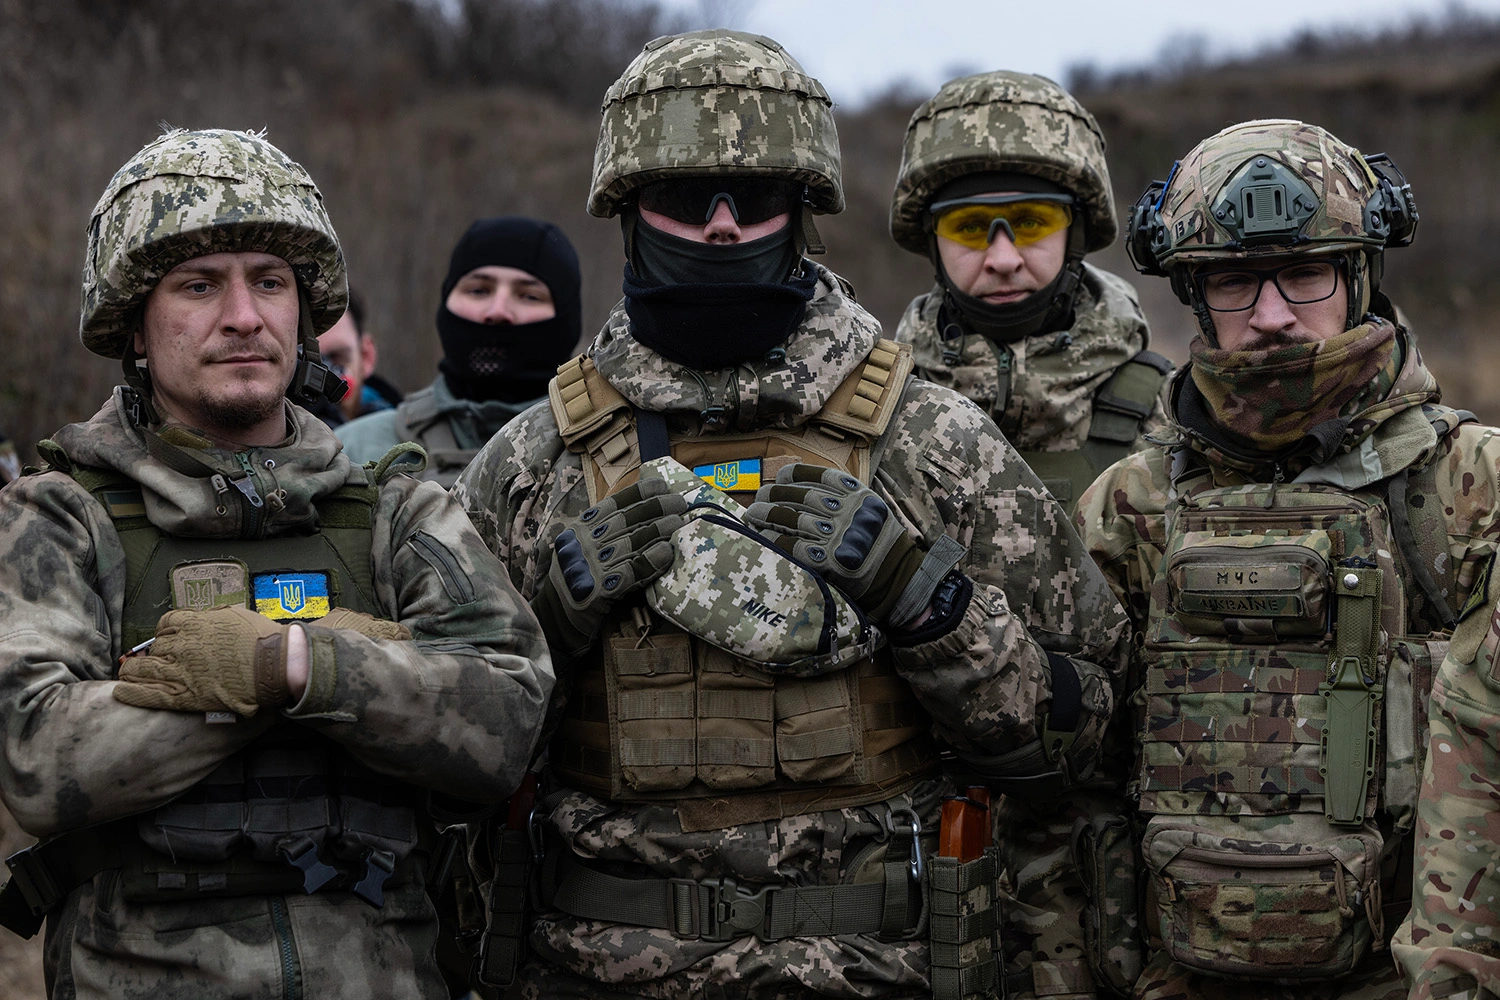 Λιποτακτούν μαζικά οι Ουκρανοί στρατιώτες: «Μας στέλνουν να πεθάνουμε για το τίποτα»